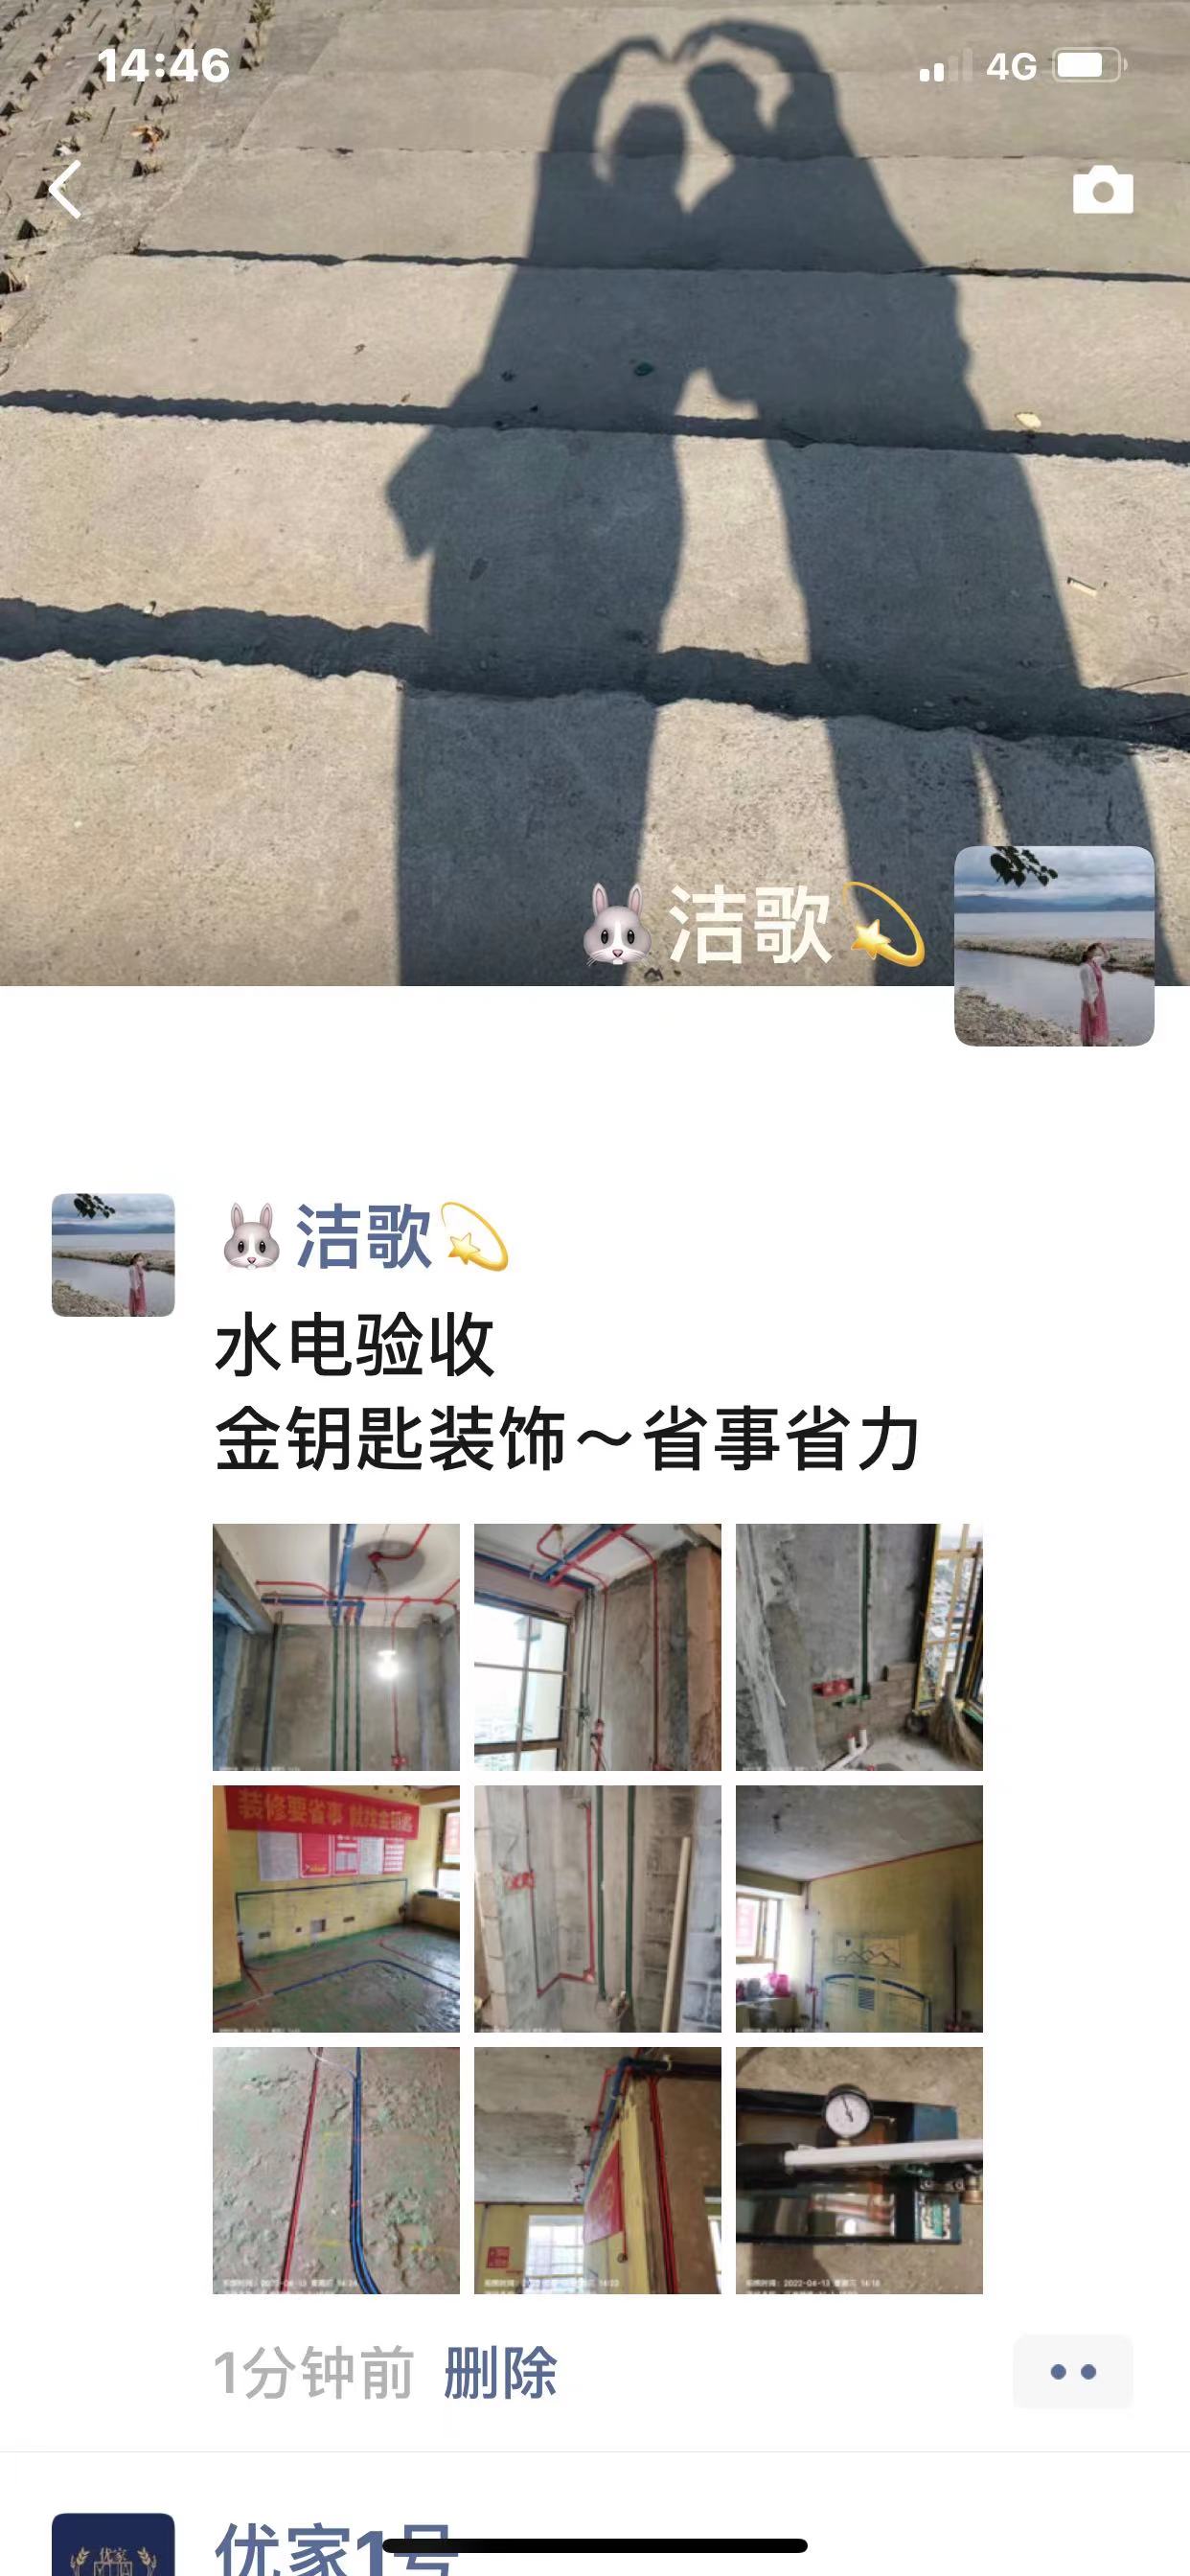 芜湖装修公司口碑推荐 金钥匙业主对工地的真实评价